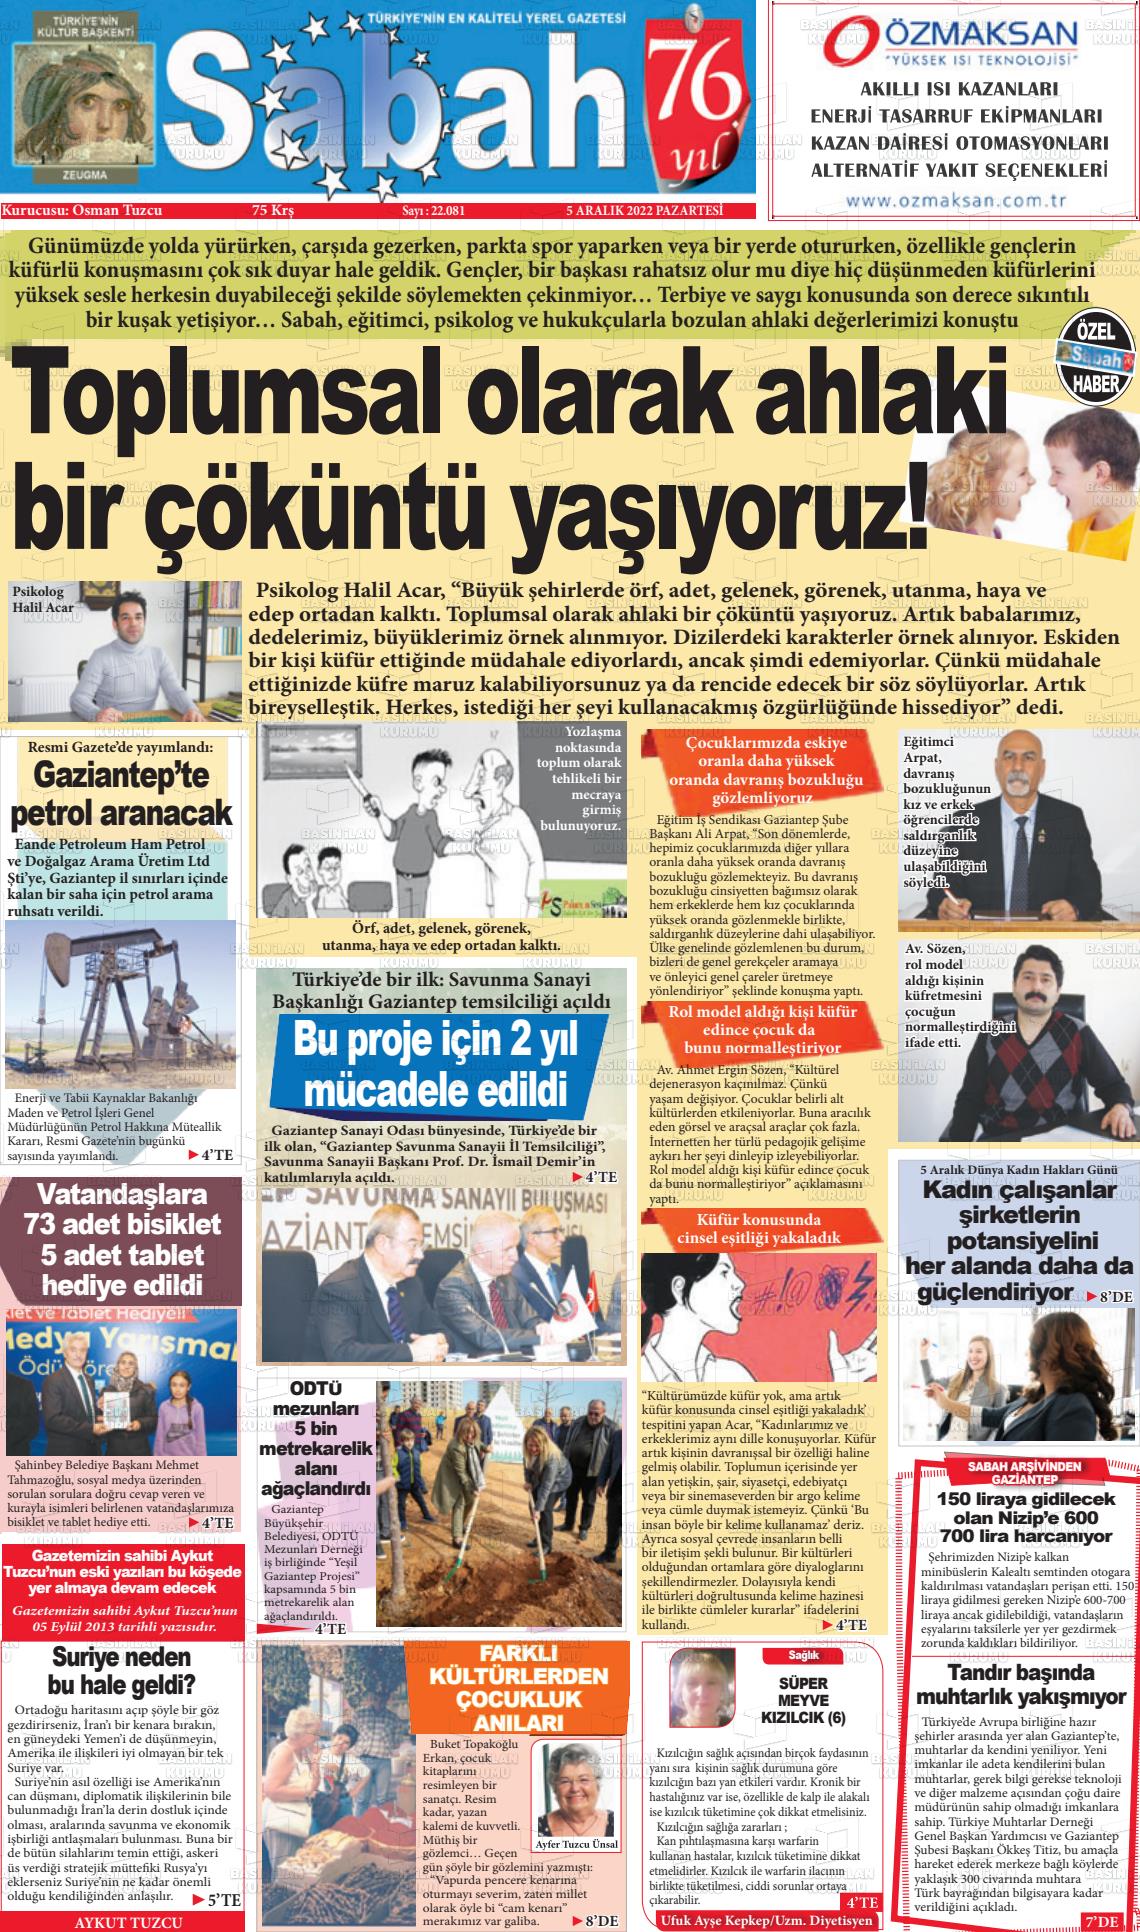 05 Aralık 2022 Gaziantep Sabah Gazete Manşeti